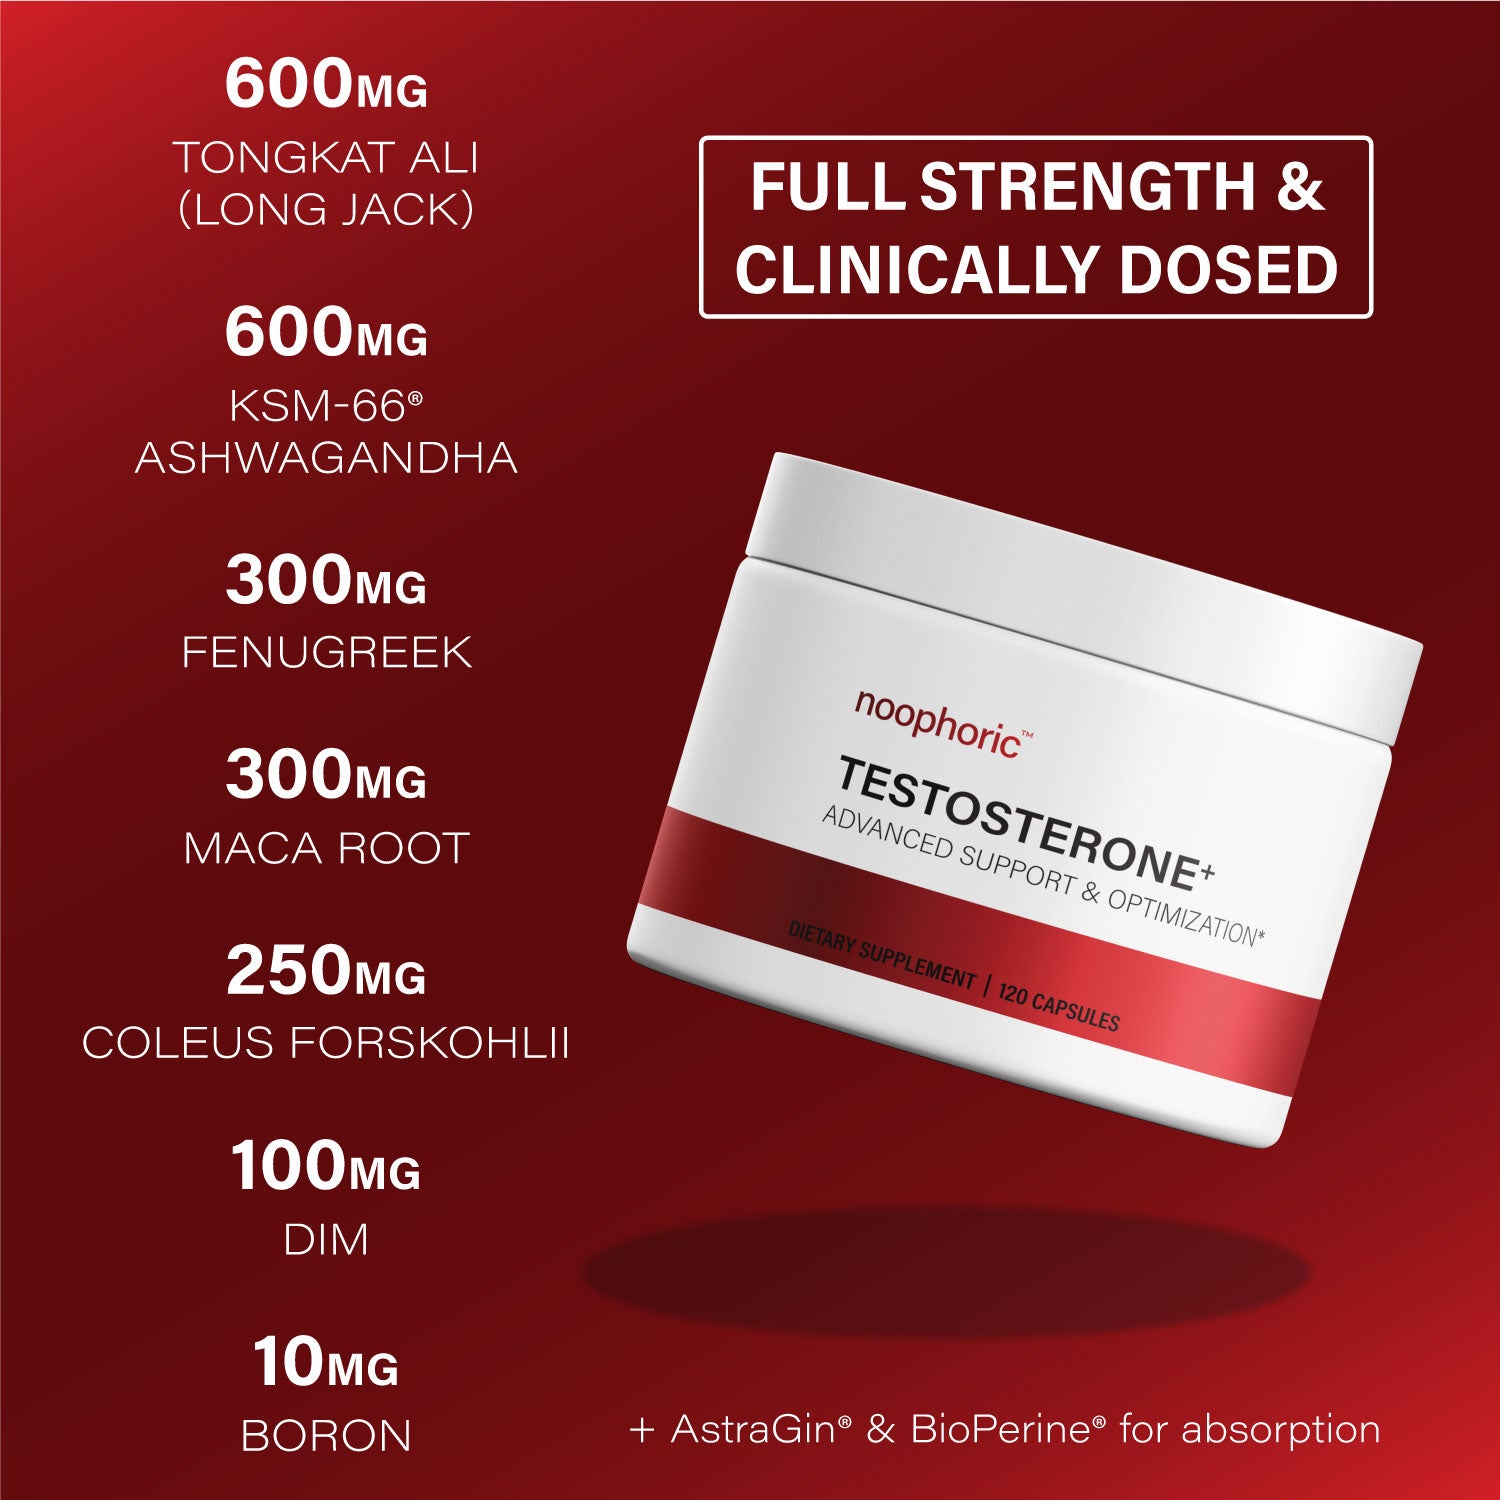 Noophoric Testosterone+